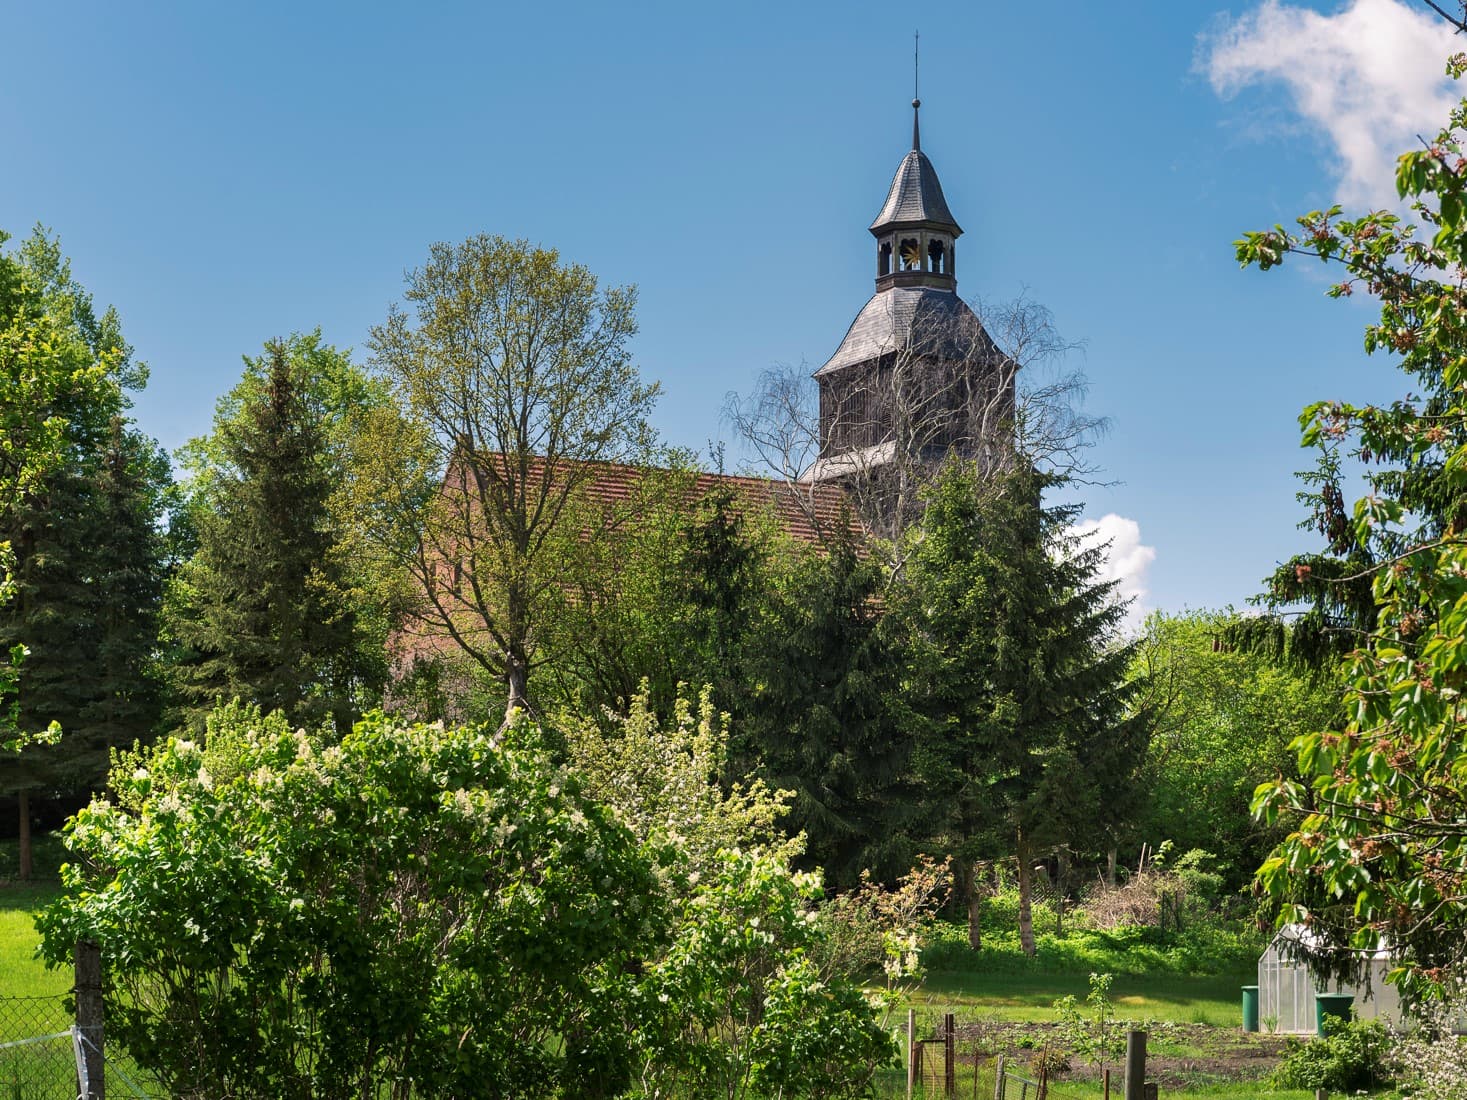 Kirche hinter grünen Büschen und Streuchern